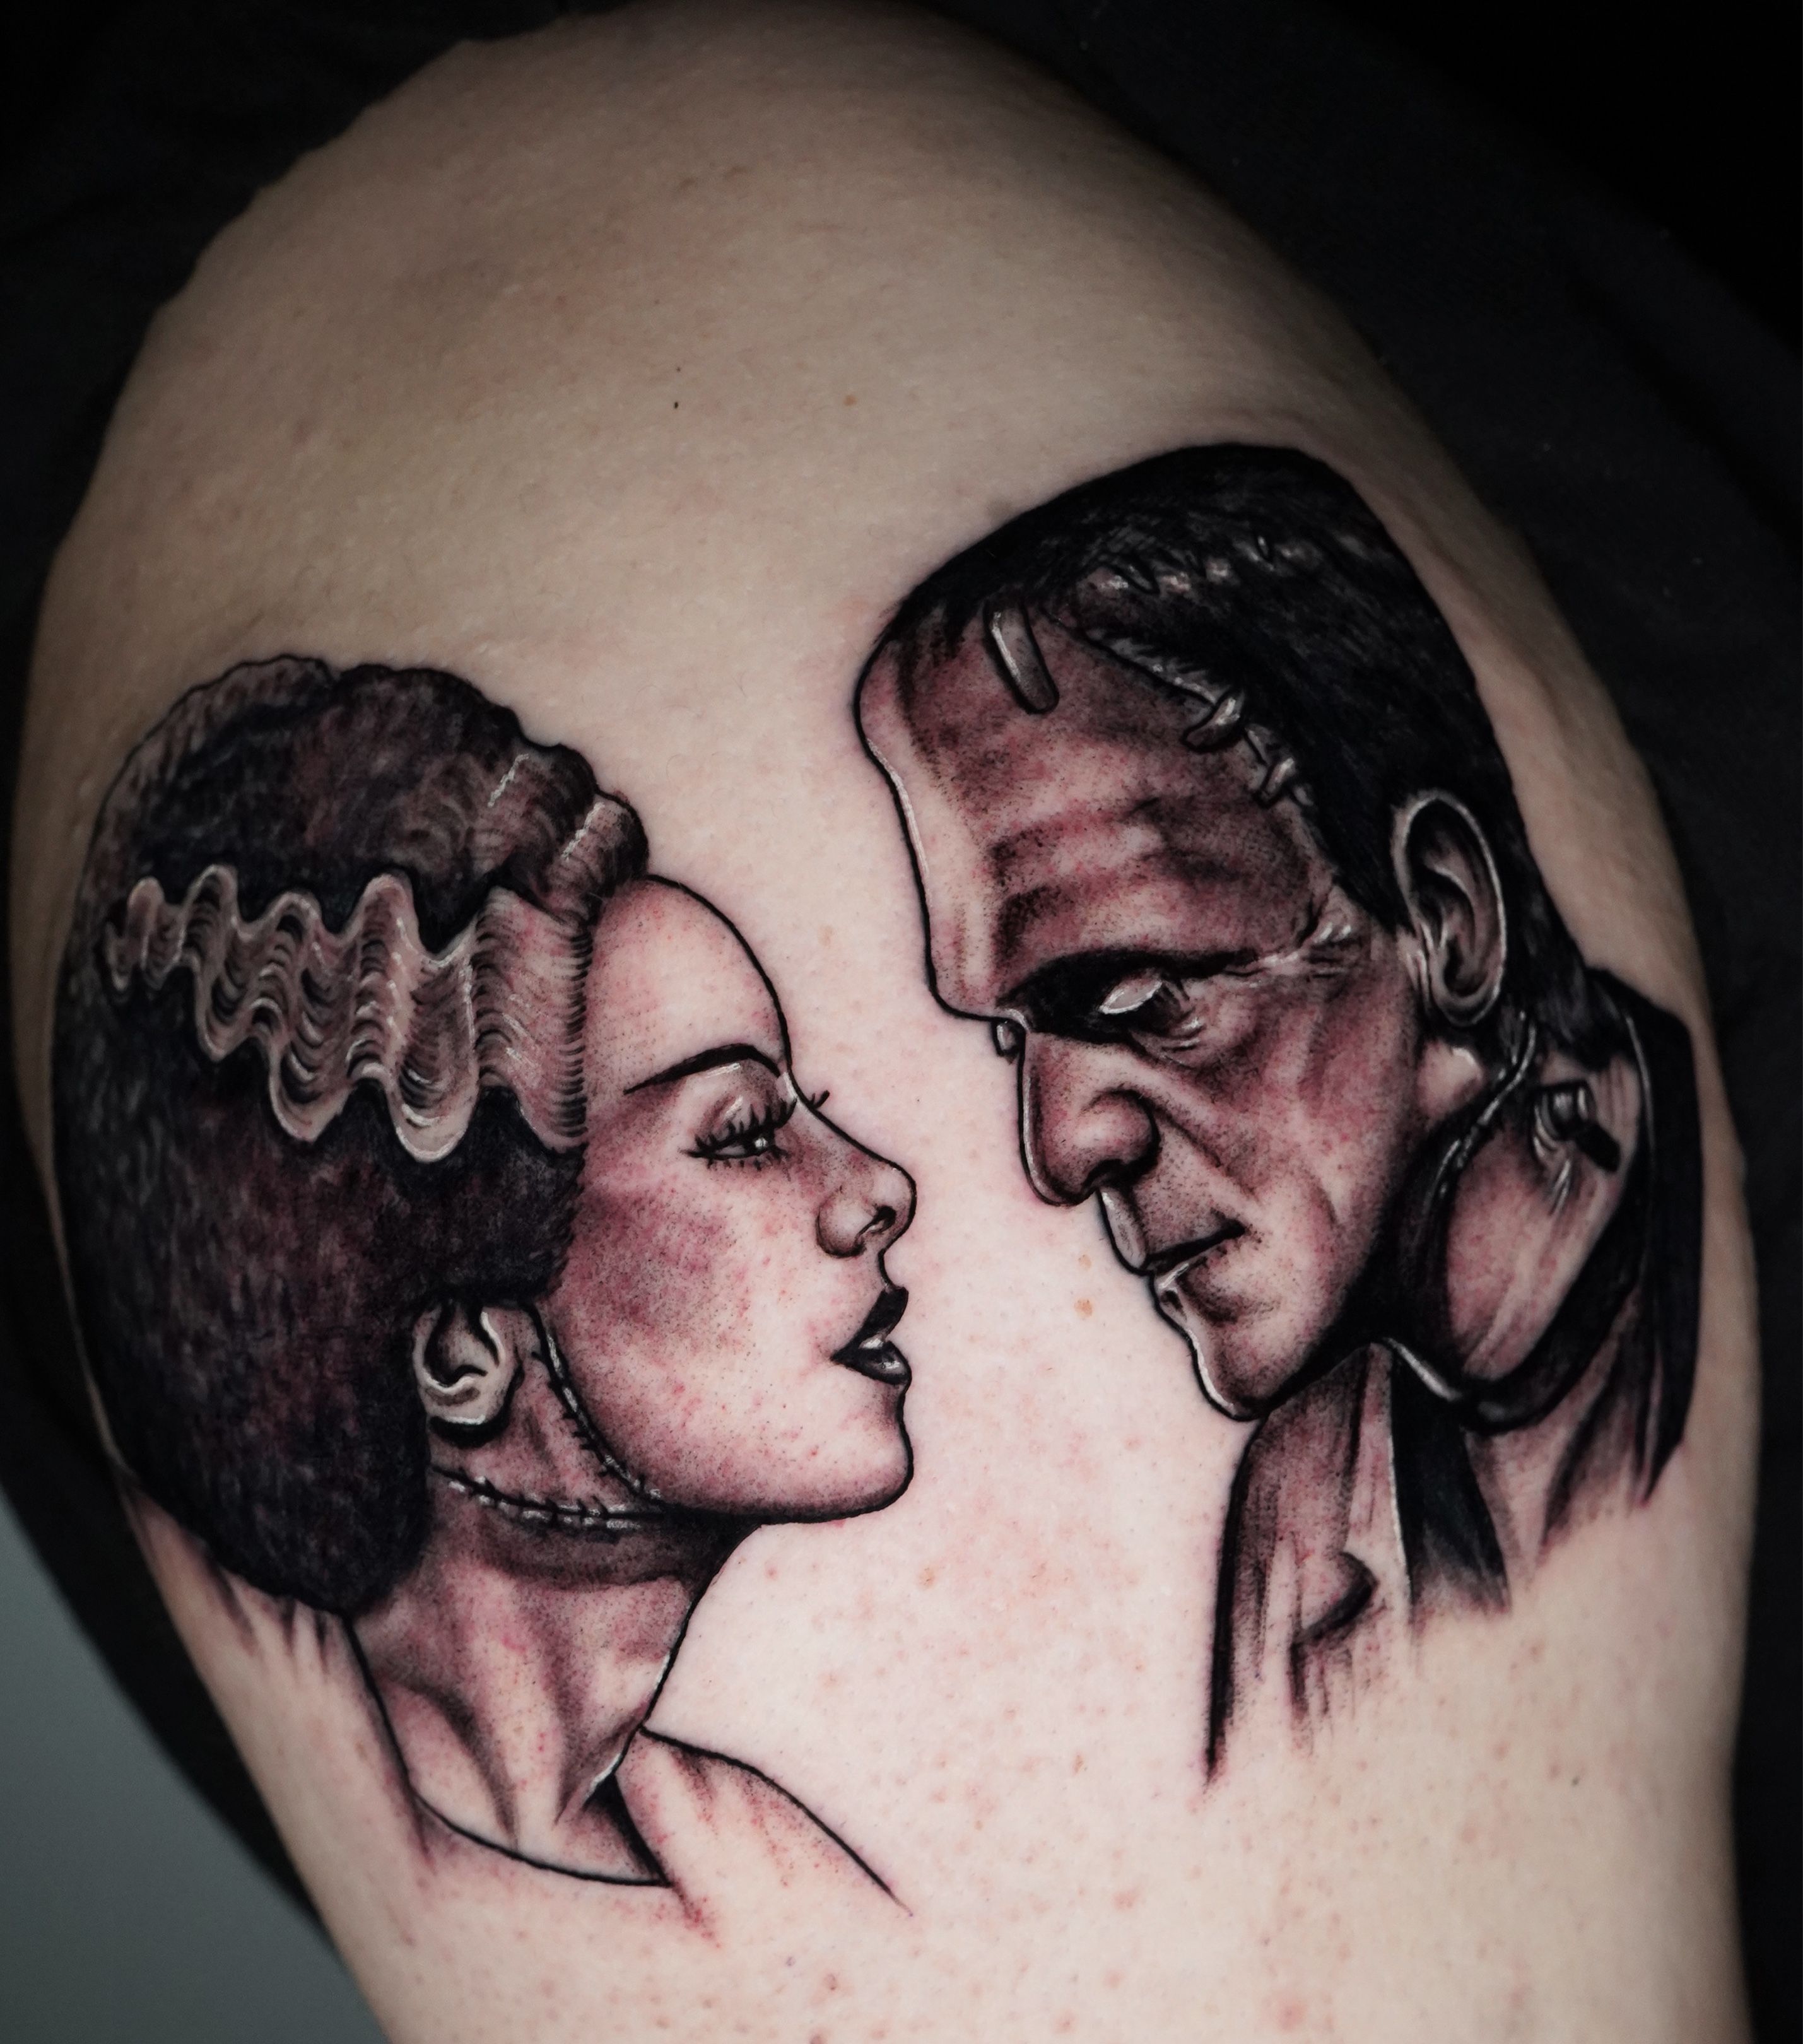 Frankenstein Tattoo Flash 2 by BeeJayDeL on DeviantArt